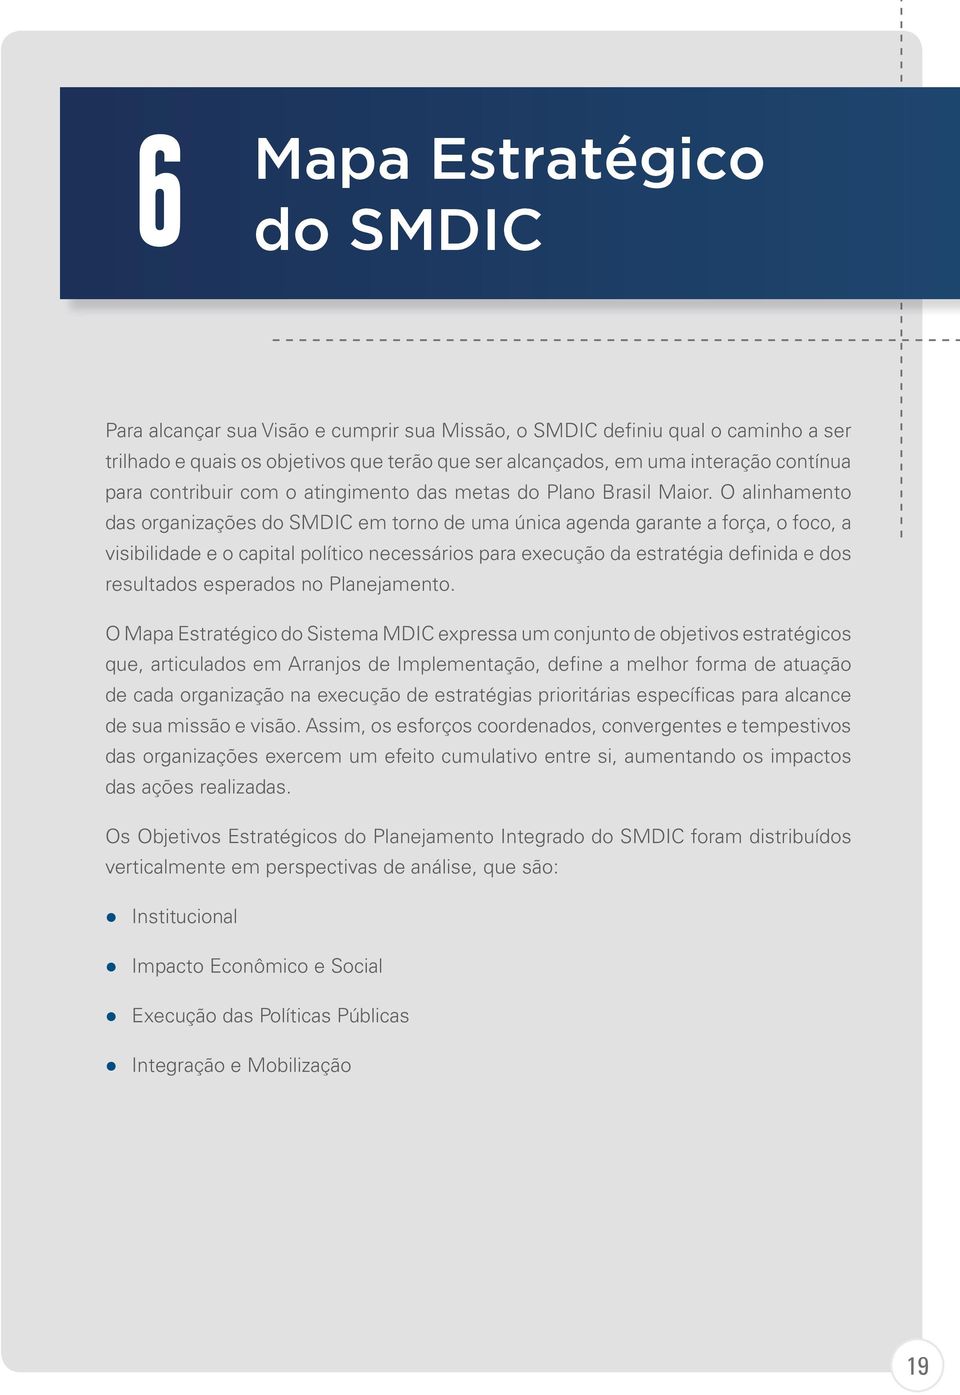 O alinhamento das organizações do SMDIC em torno de uma única agenda garante a força, o foco, a visibilidade e o capital político necessários para execução da estratégia definida e dos resultados